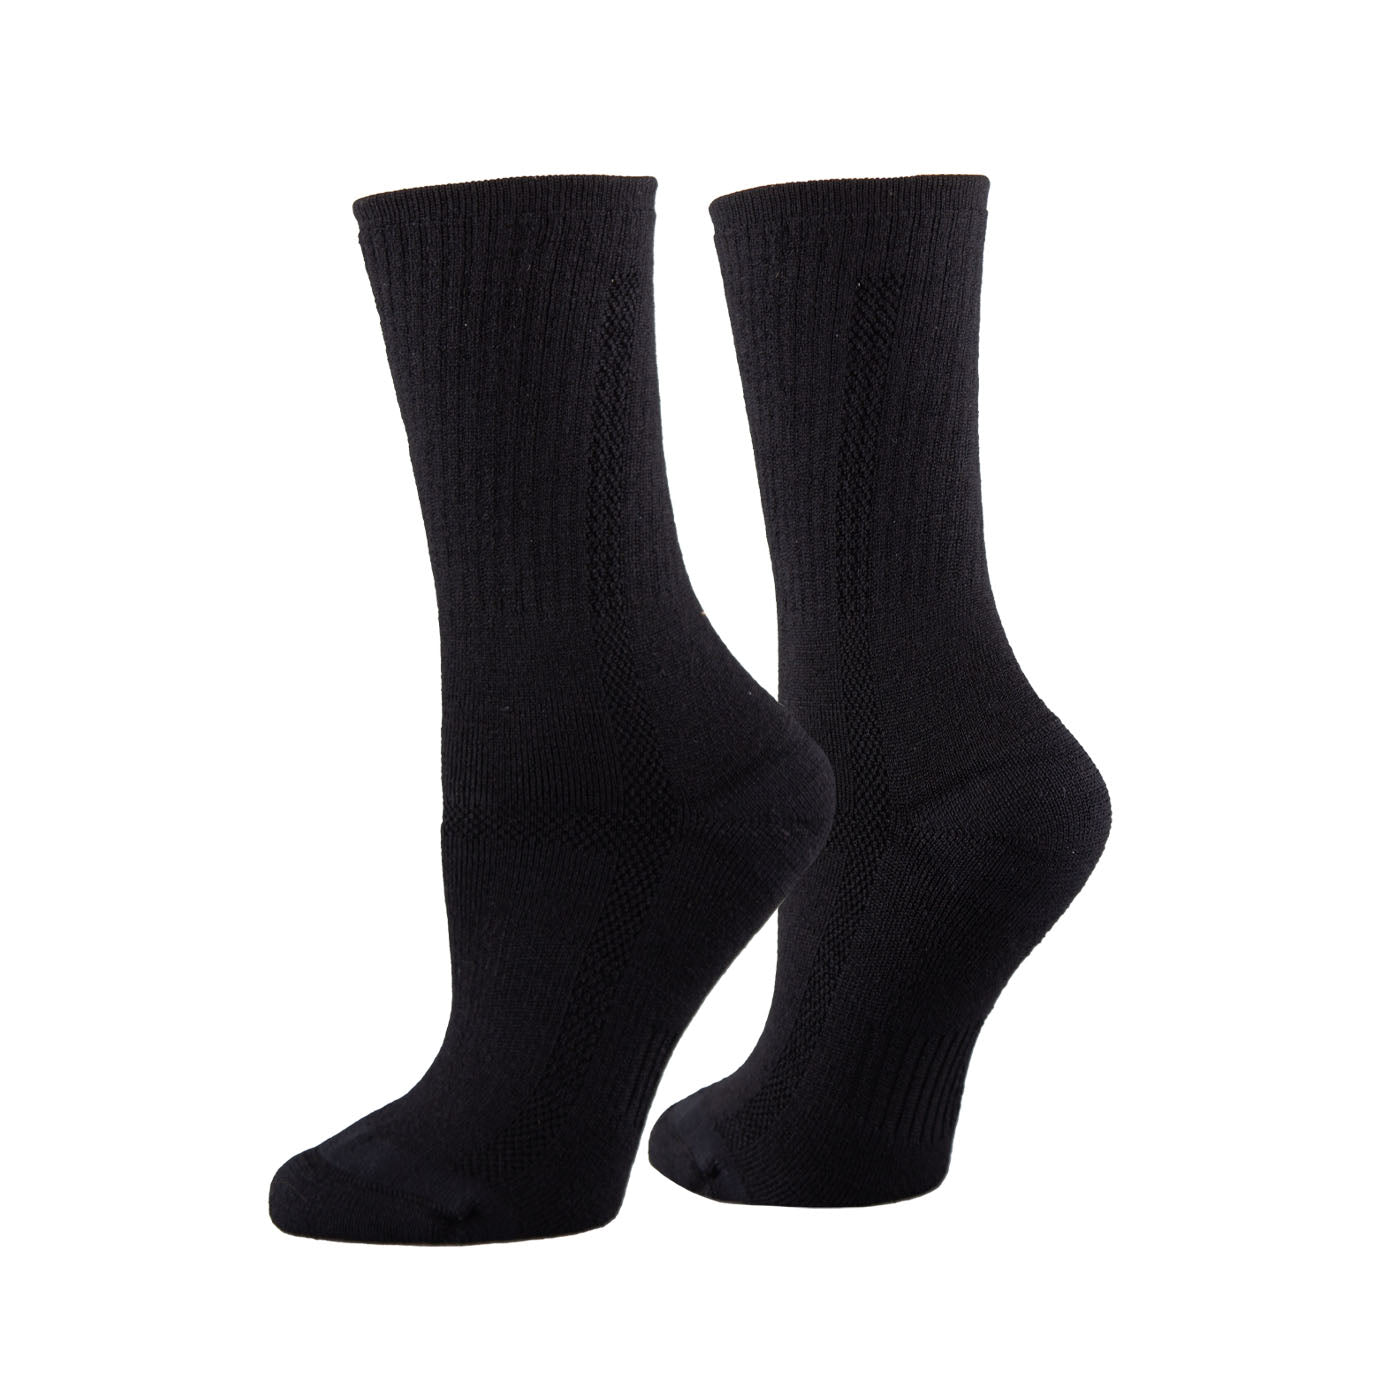 Unisex black PERFORMANCE work socks